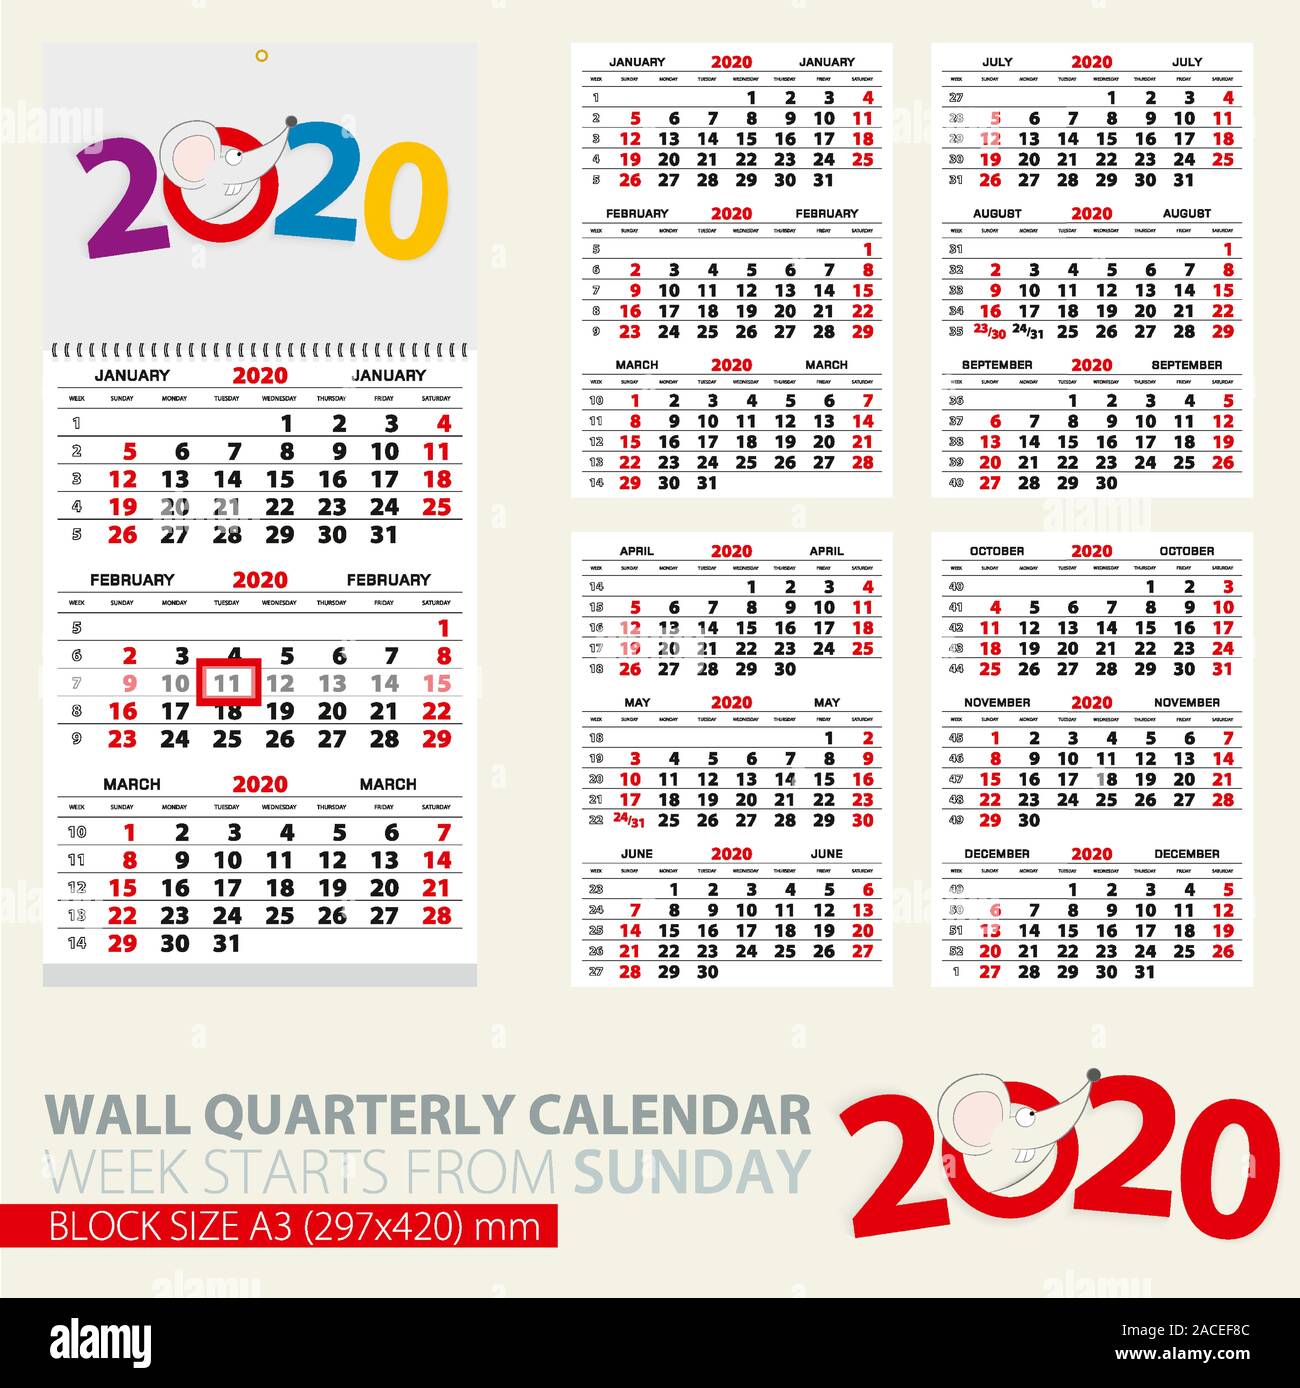 Quarterly Calendar Template from c8.alamy.com